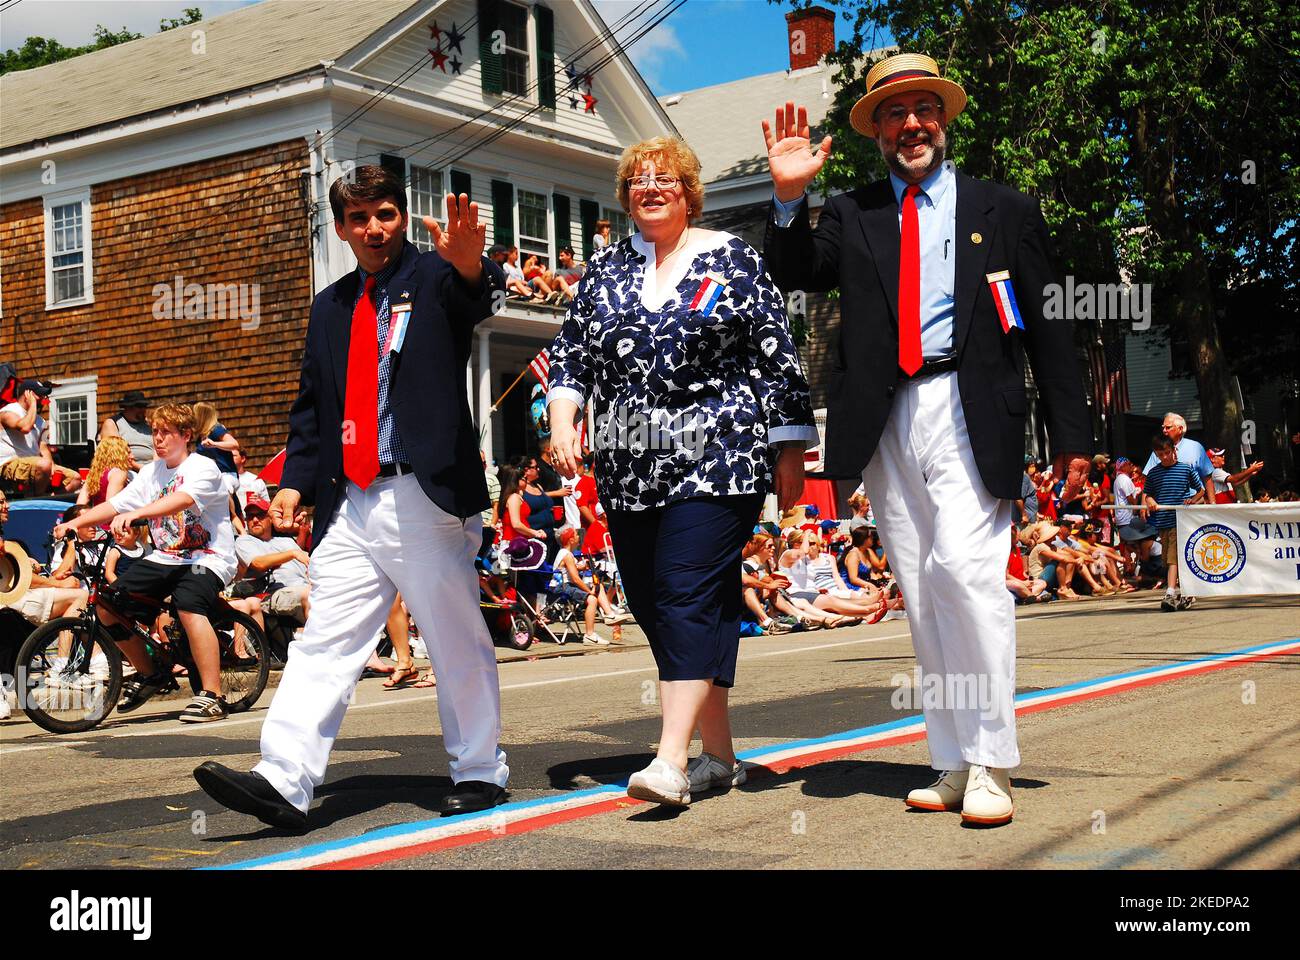 Ein Bürgermeister der Kleinstadt und die Mitarbeiter marschieren und winken am 4. Juli in Bristol Rhode Island, der ältesten Parade zum Unabhängigkeitstag in den USA, vor der Menge Stockfoto